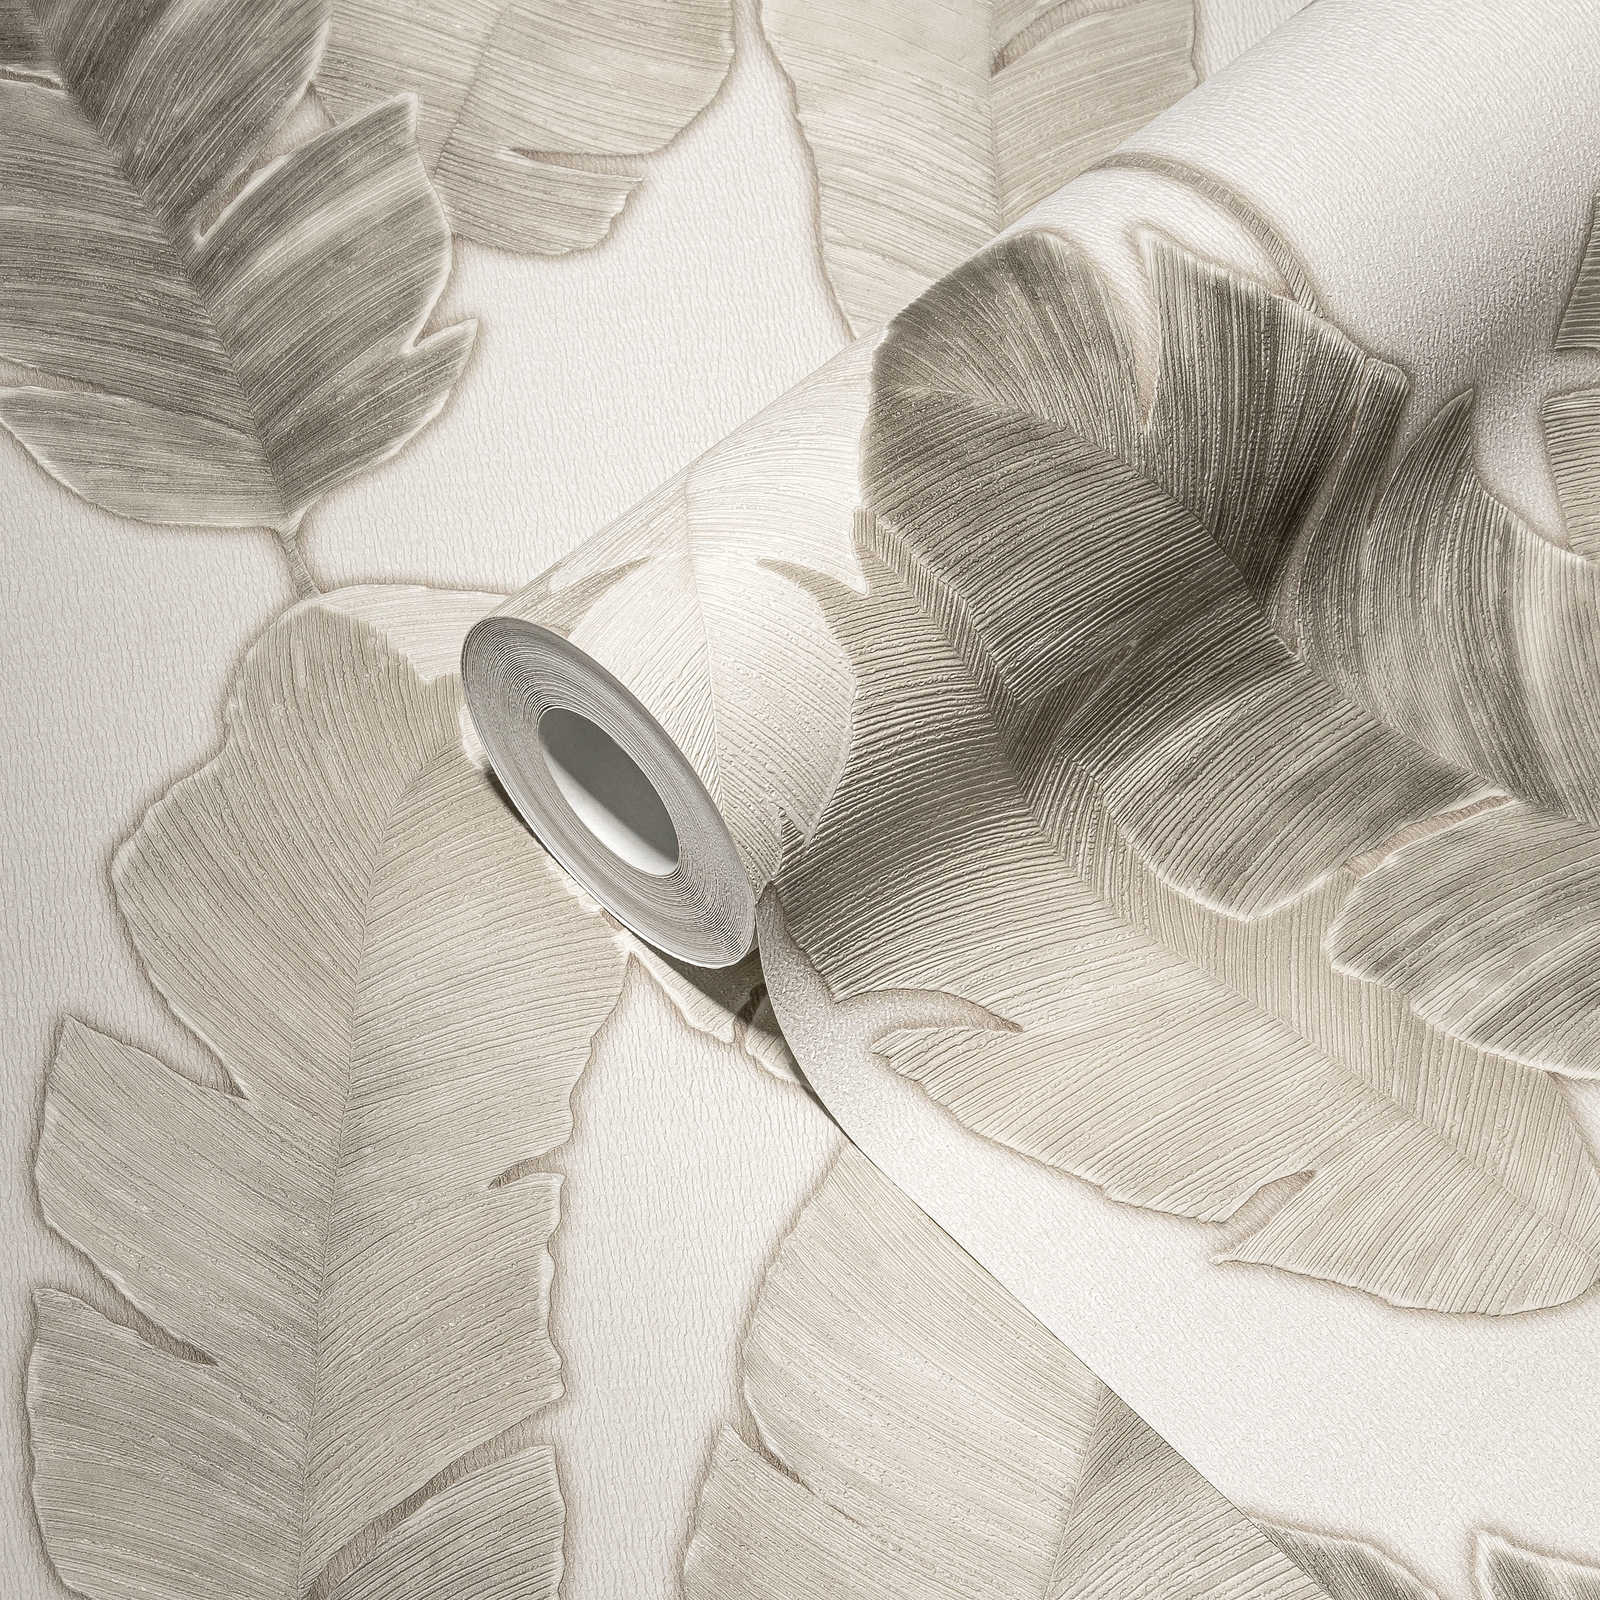             Vliestapete mit dezenten Palmenplätter – Weiß, Beige, Grau
        